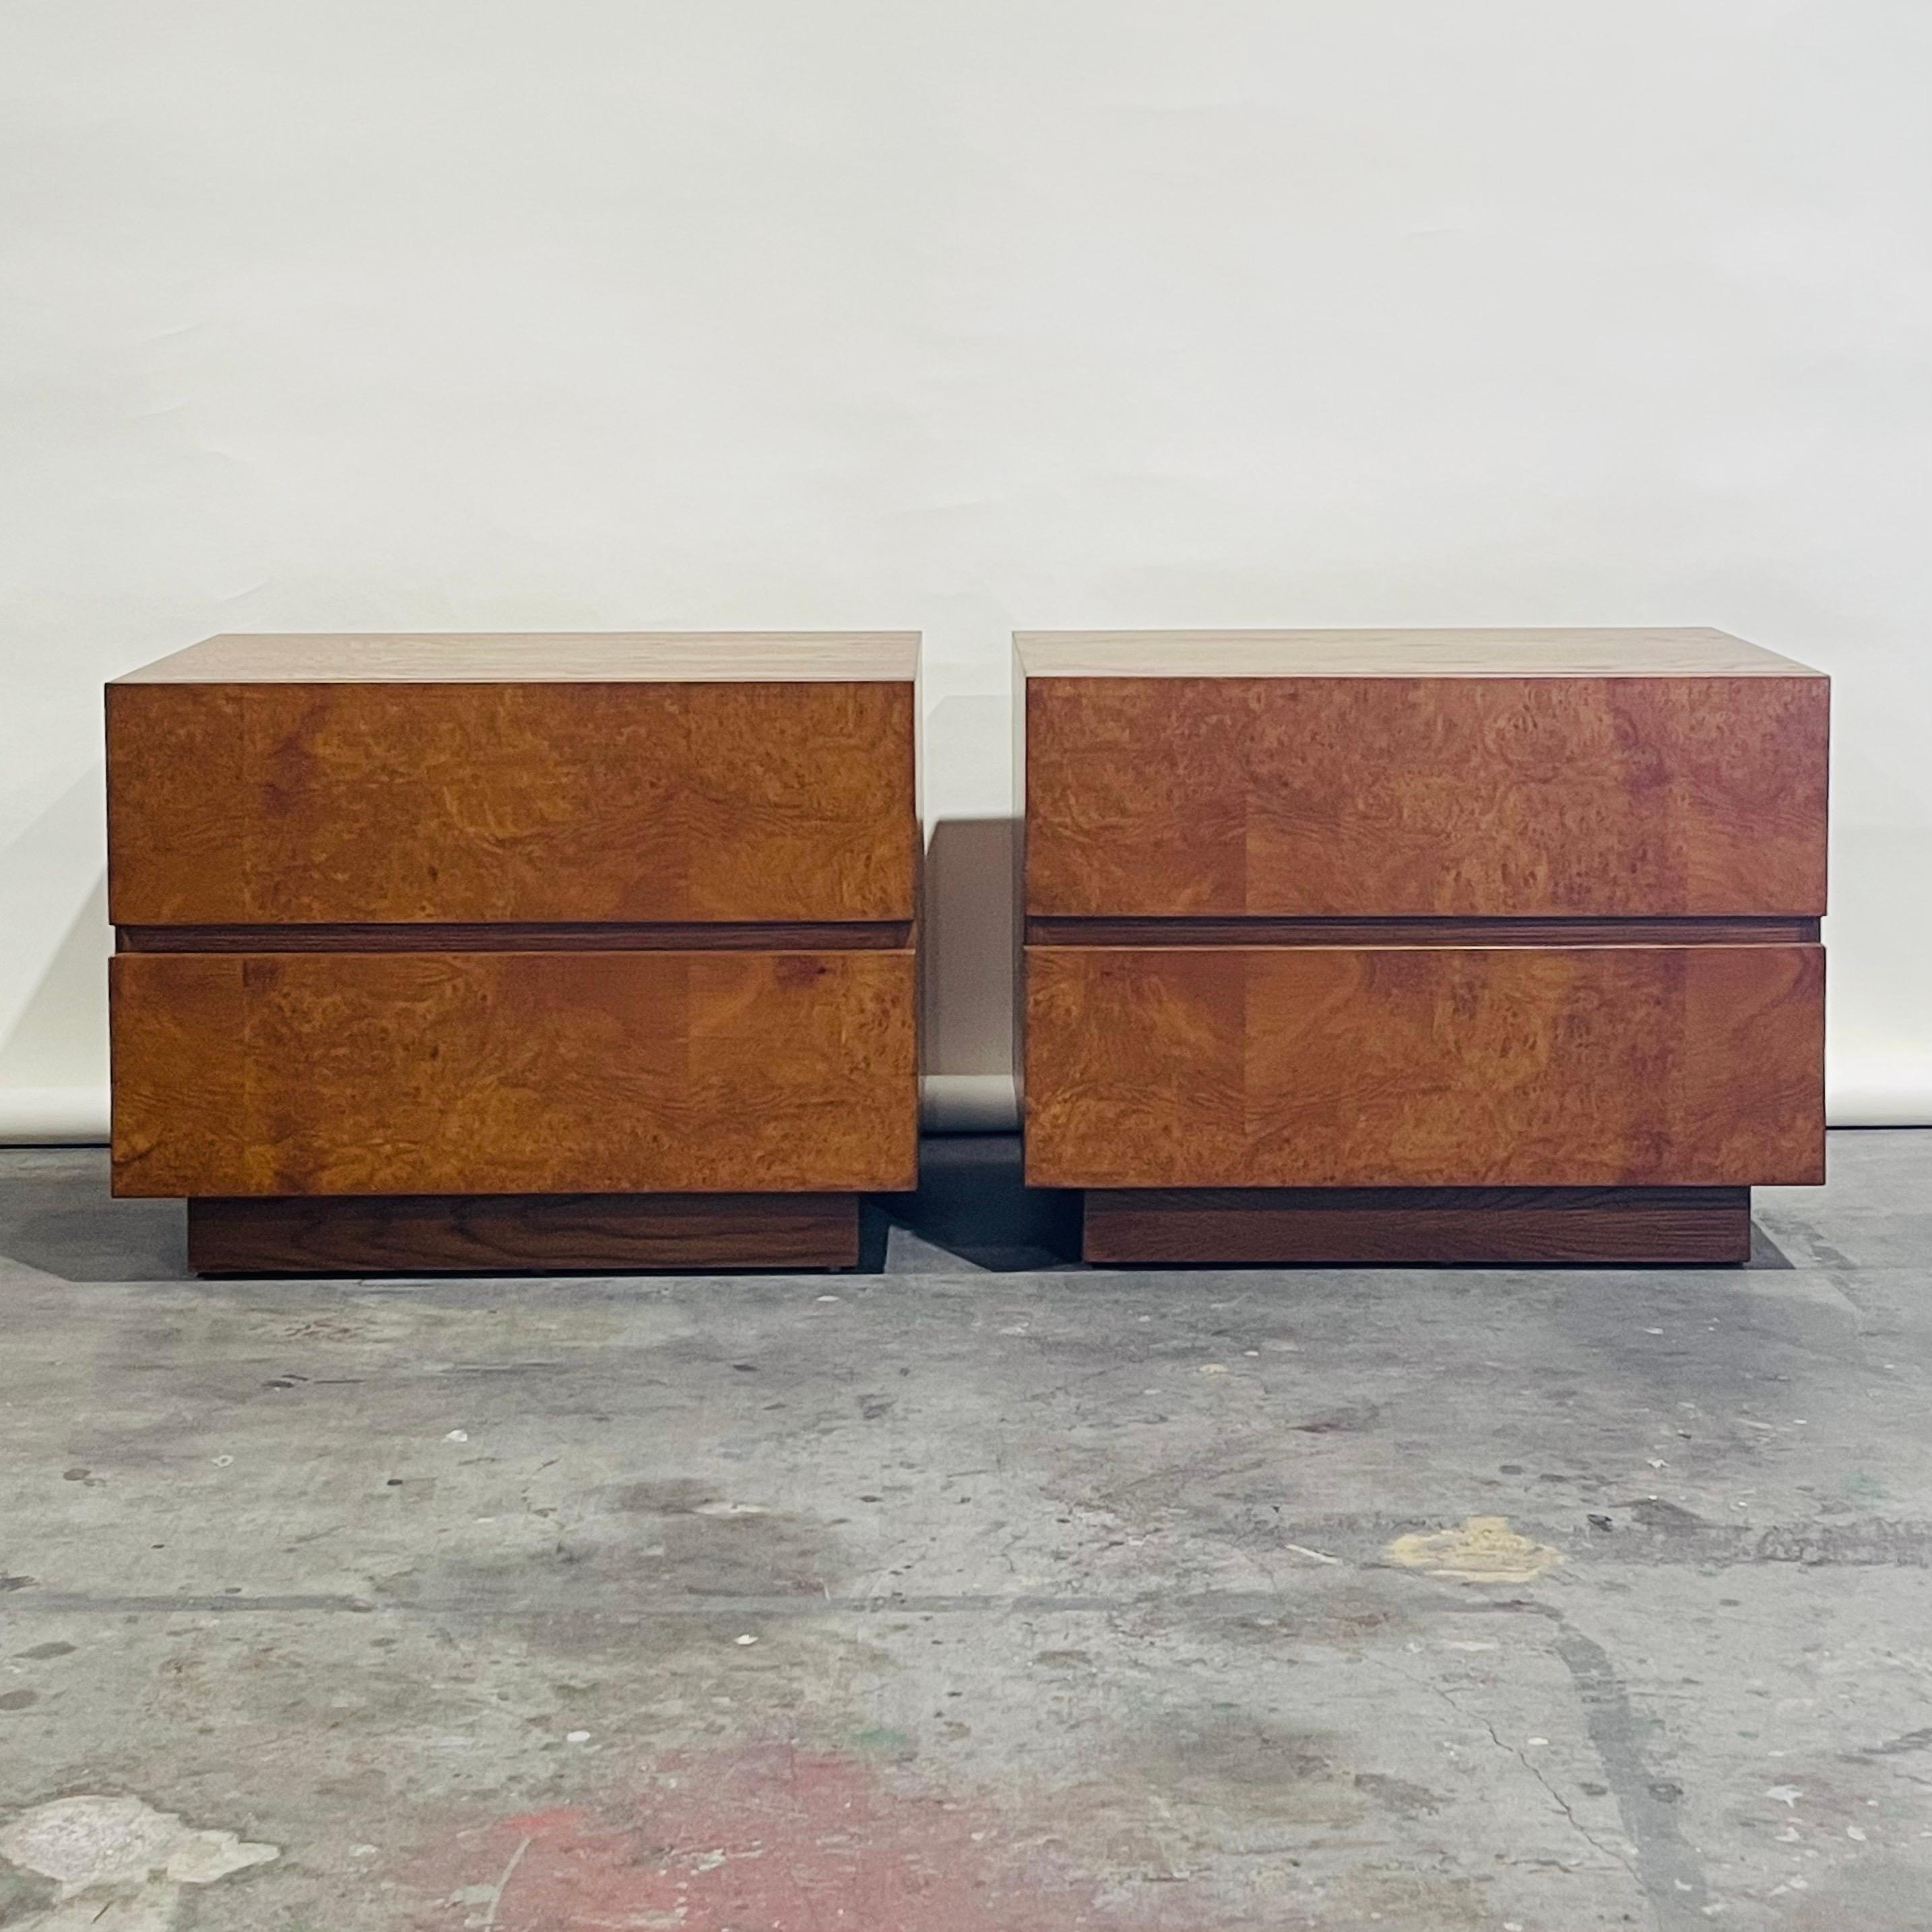 Minimalistisches Nachttischpaar 'Amboine' aus Wurzelholz von Design Frères.

Einfaches, funktionelles Design mit 2 tiefen Schubladen pro Nachttisch.